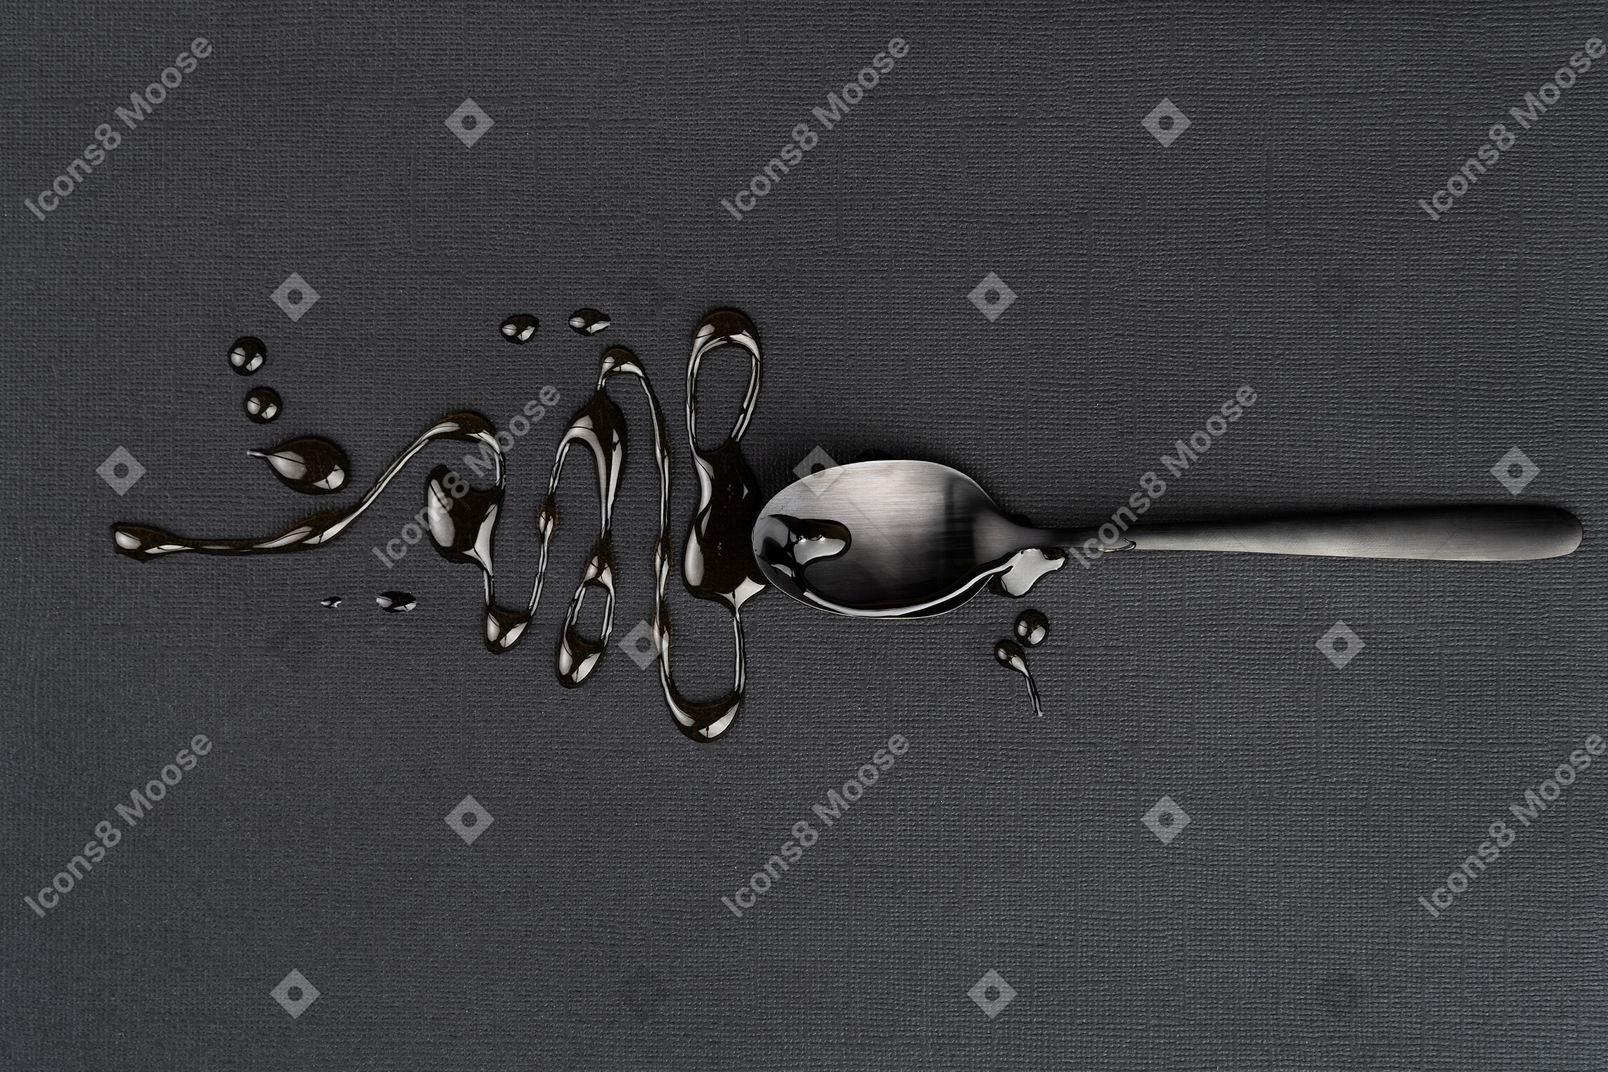 Metal tea spoon with liquid on the black